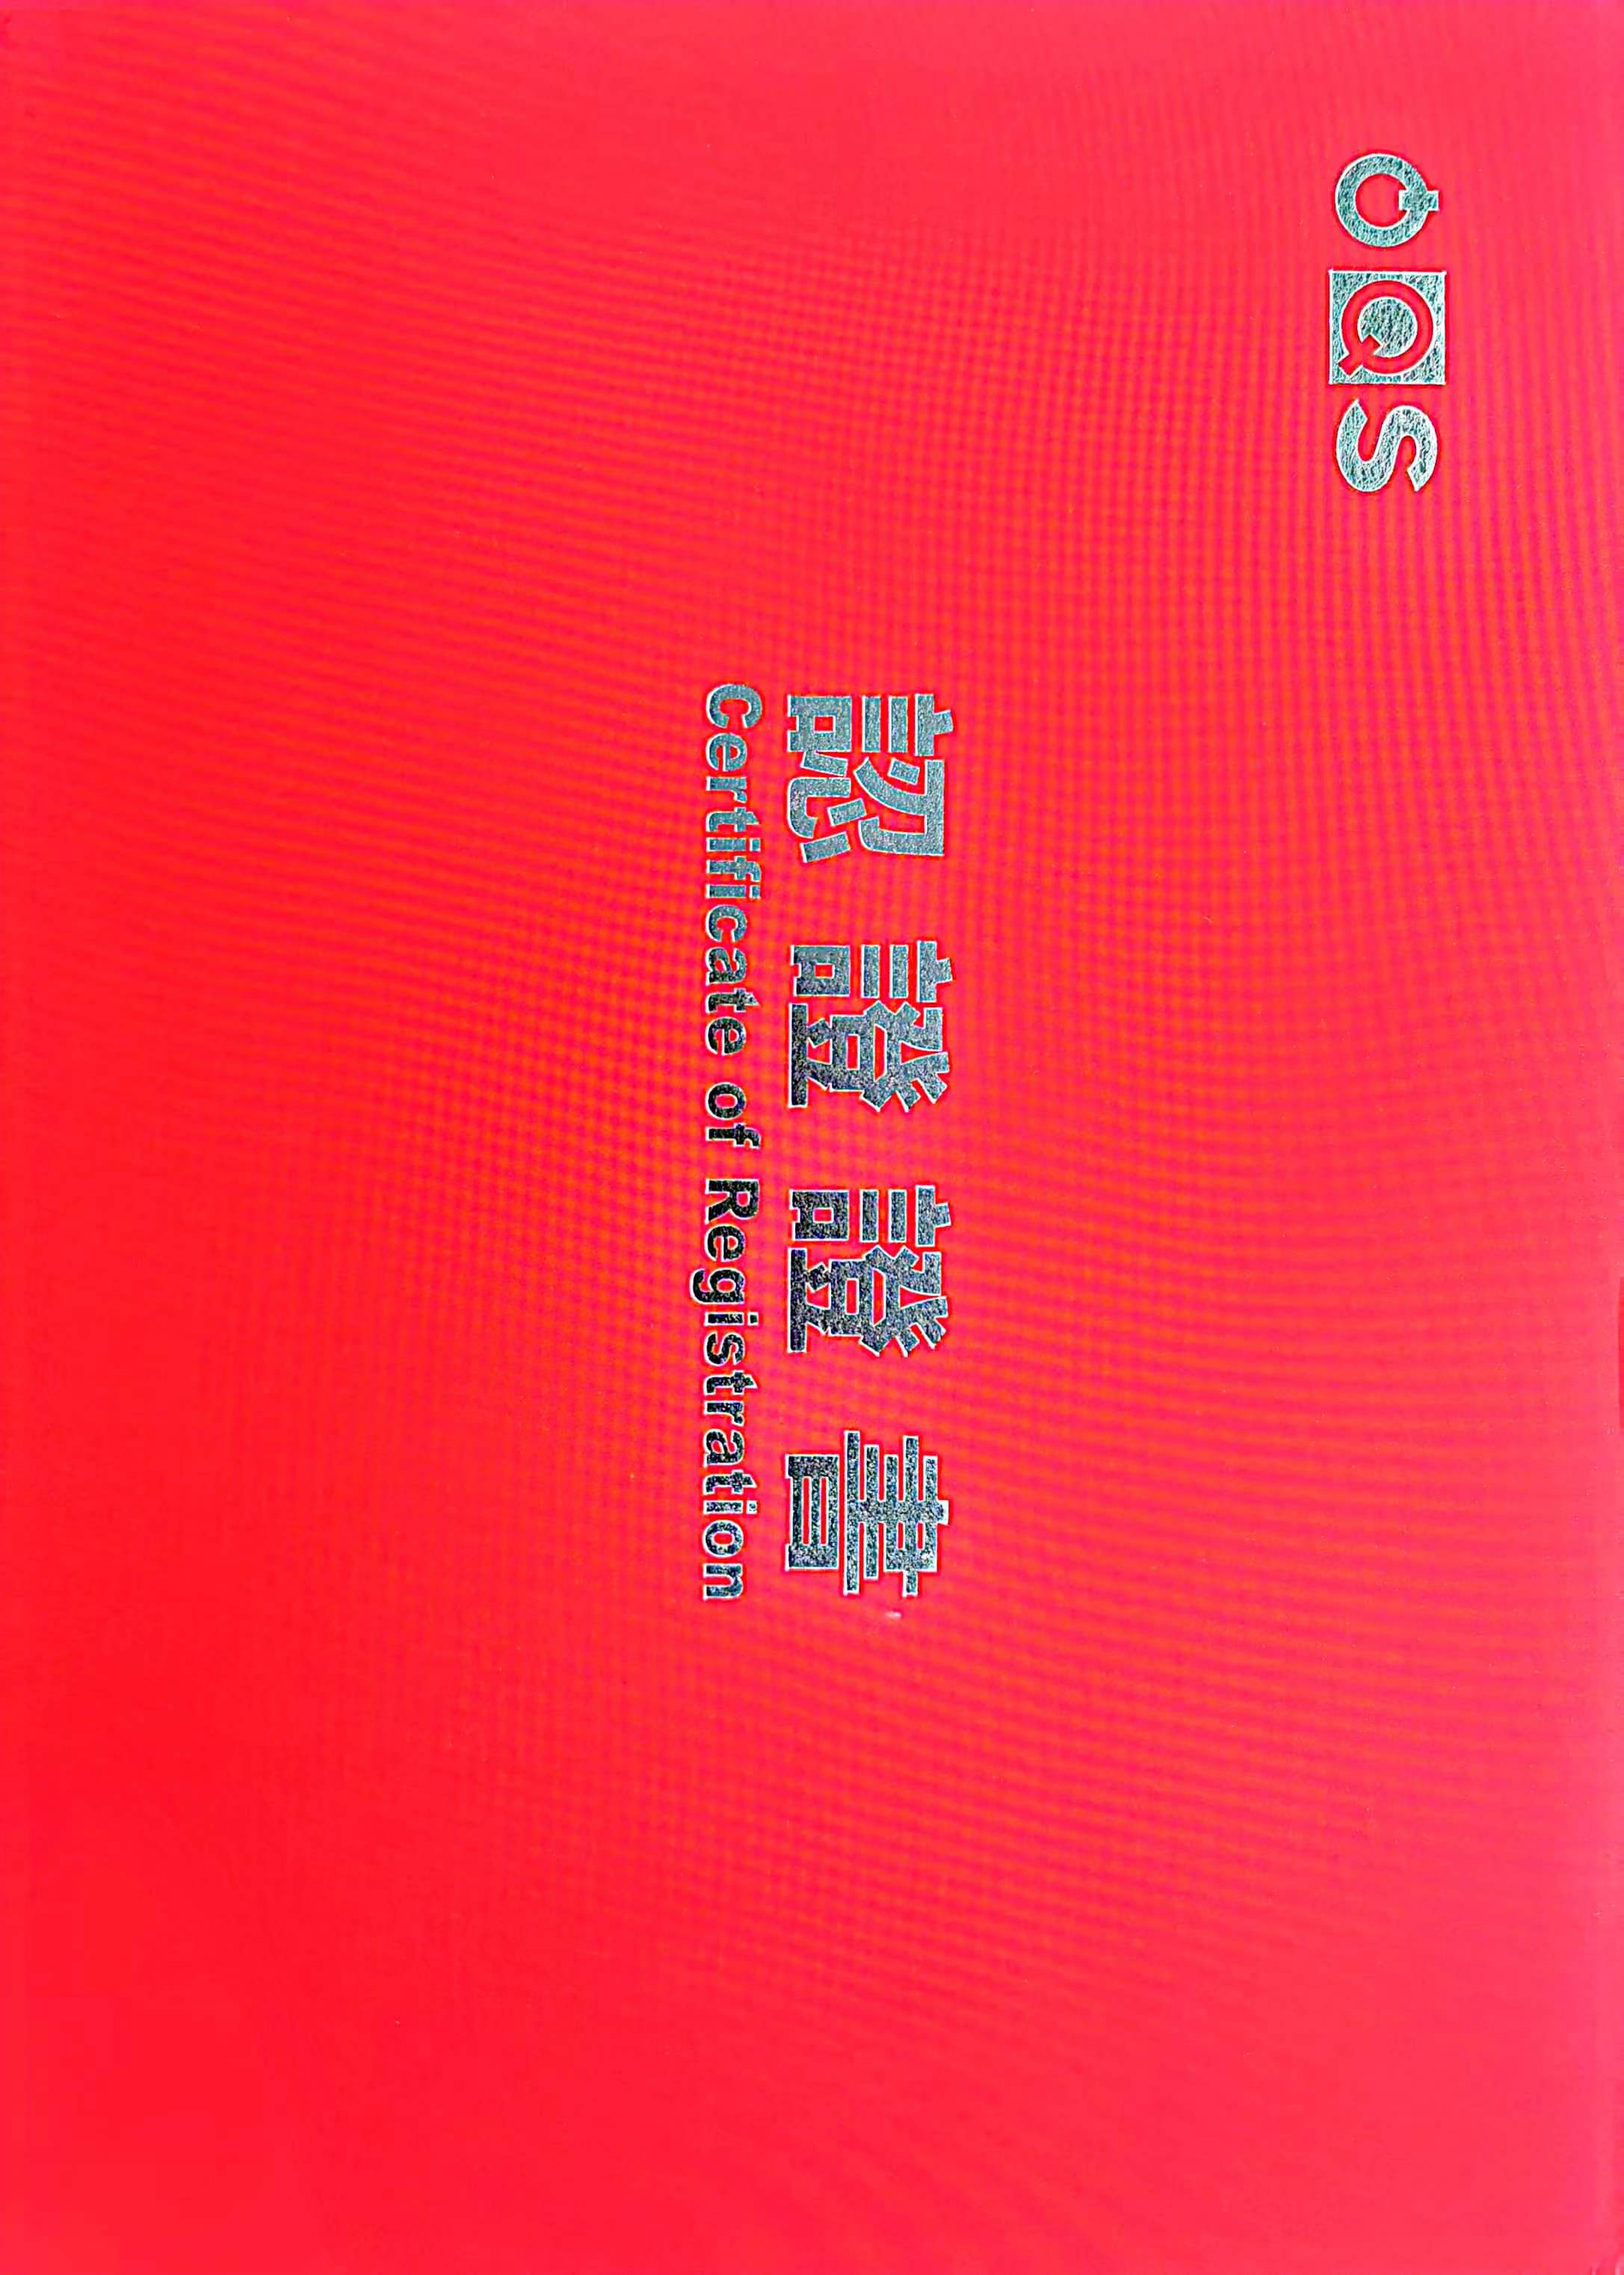 Hebei Qiangsheng Machinery Parts Co., Ltd. ir izturējis IATF19649 sertifikātu.